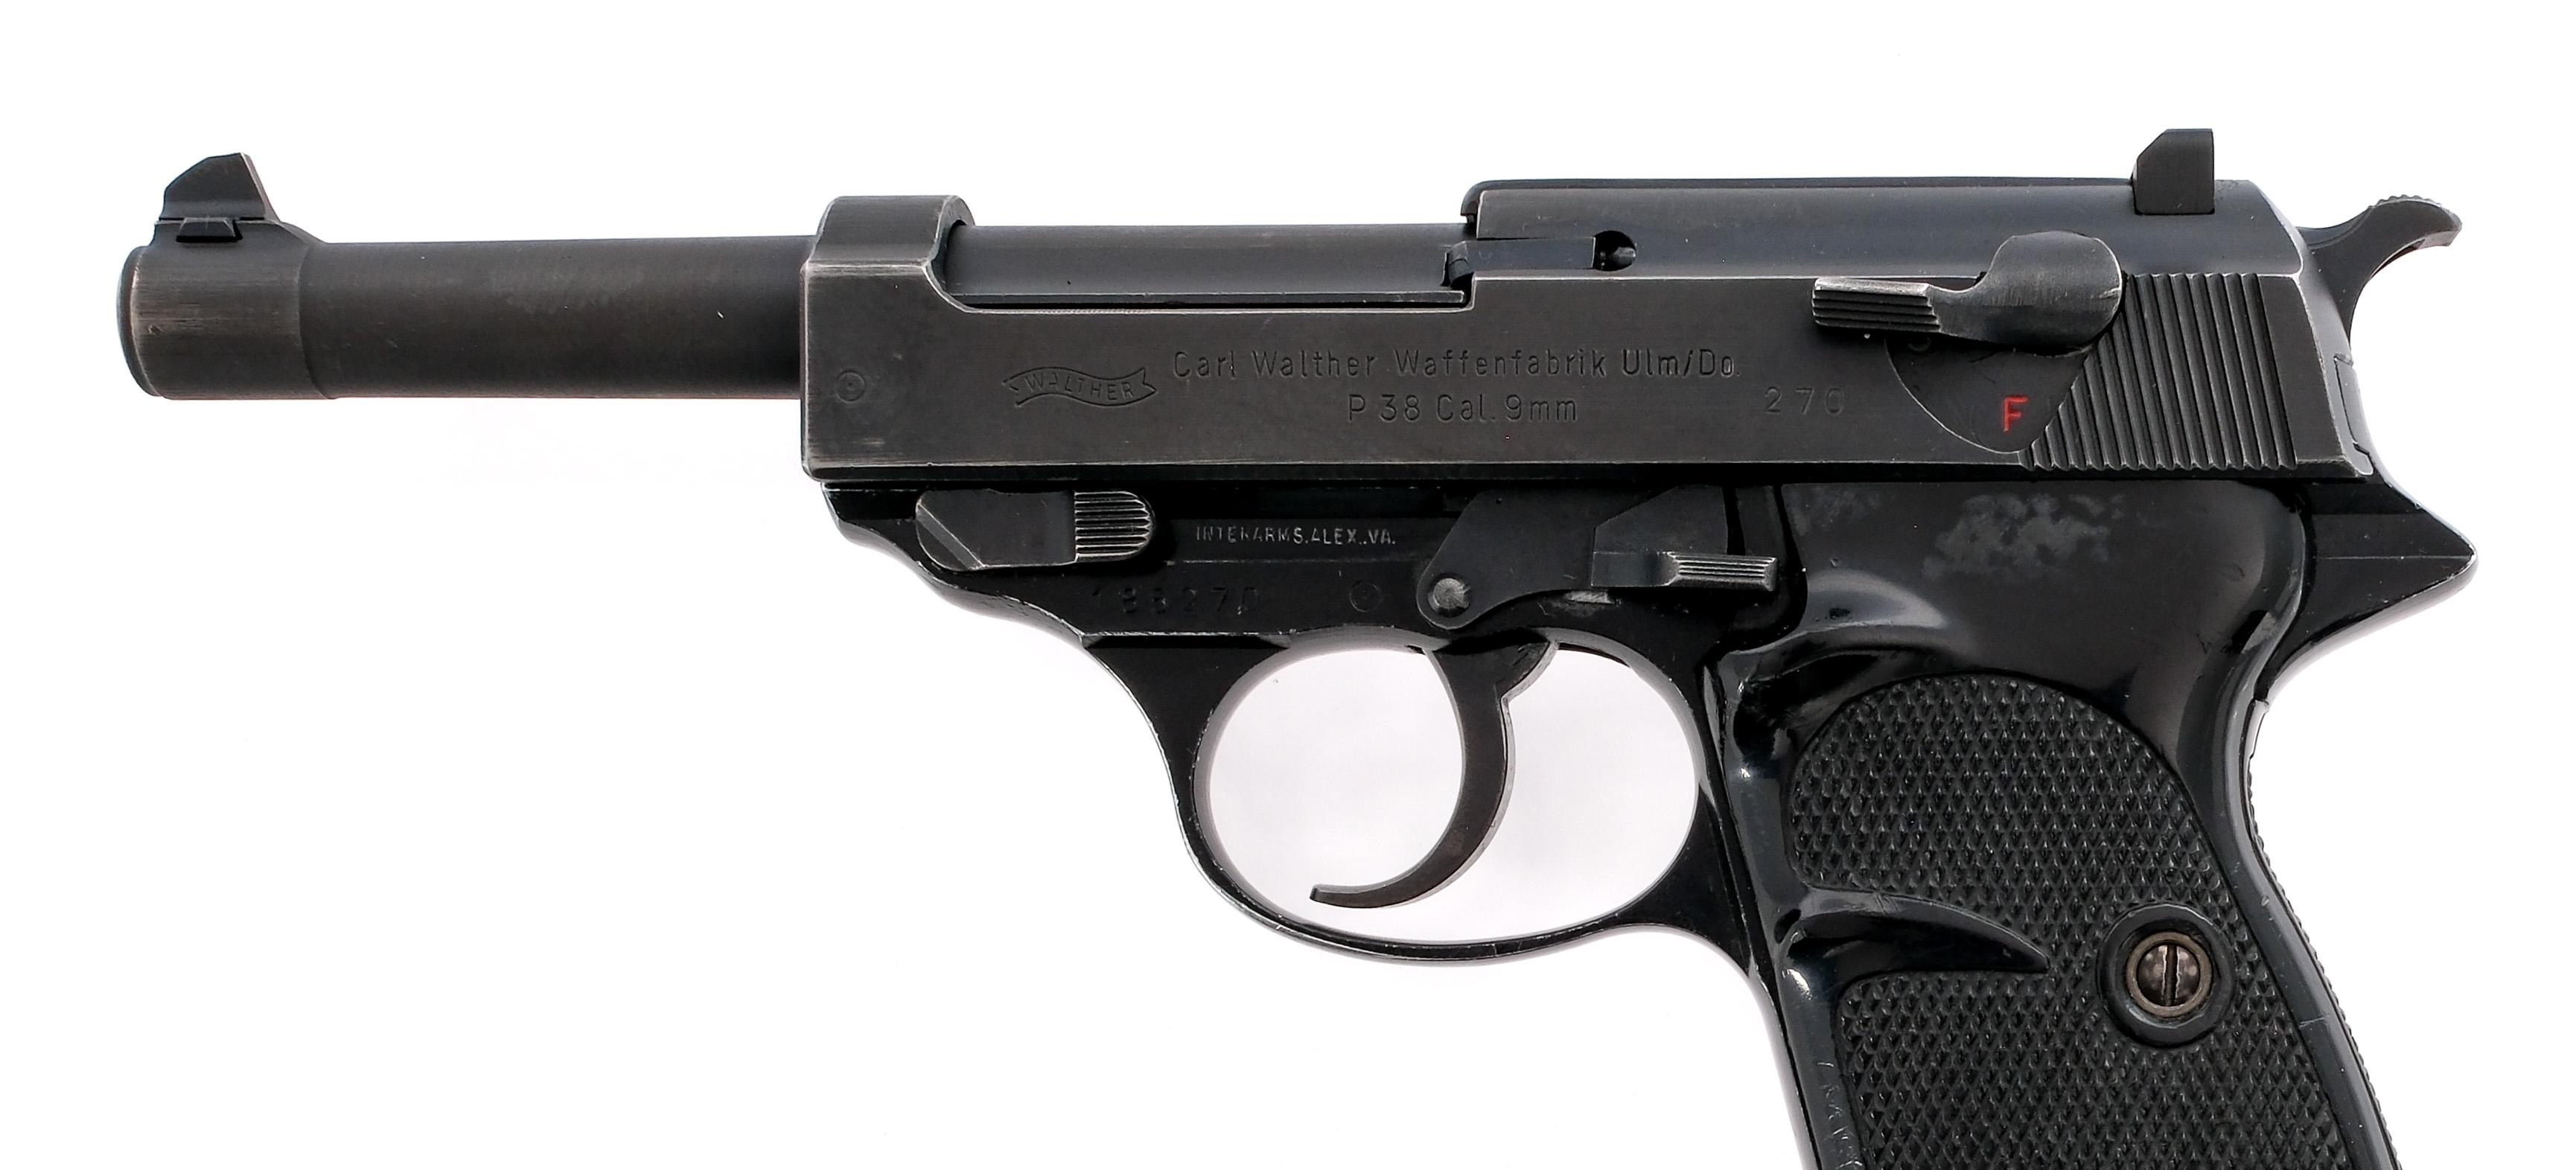 Walther P38/P1 9mm Semi Auto Pistol